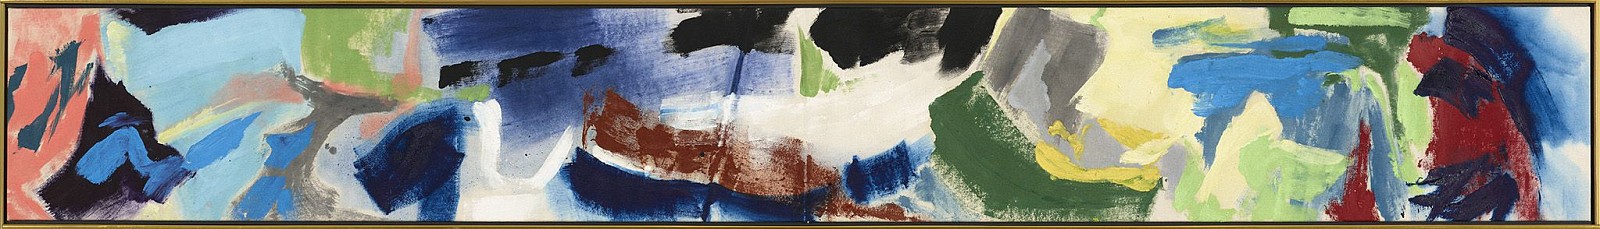 Friedel Dzubas, Easy Jump, 1988
Acrylic on canvas, 14 x 105 1/4 in. (35.6 x 267.3 cm)
DZU-00017